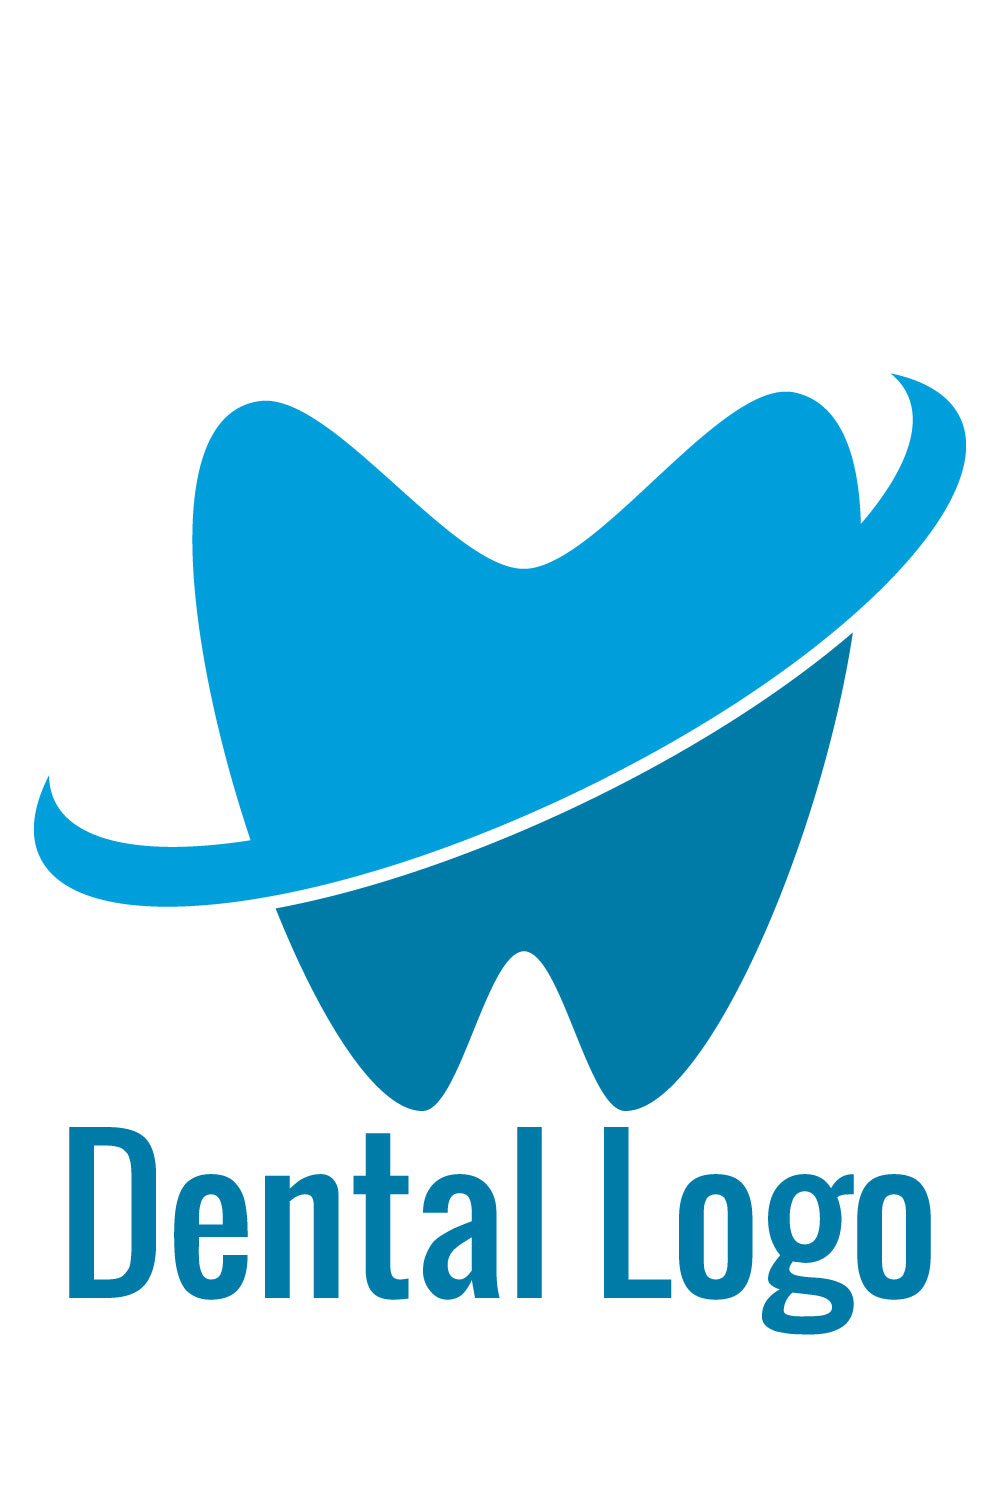 Dental Logo Pinterest image.